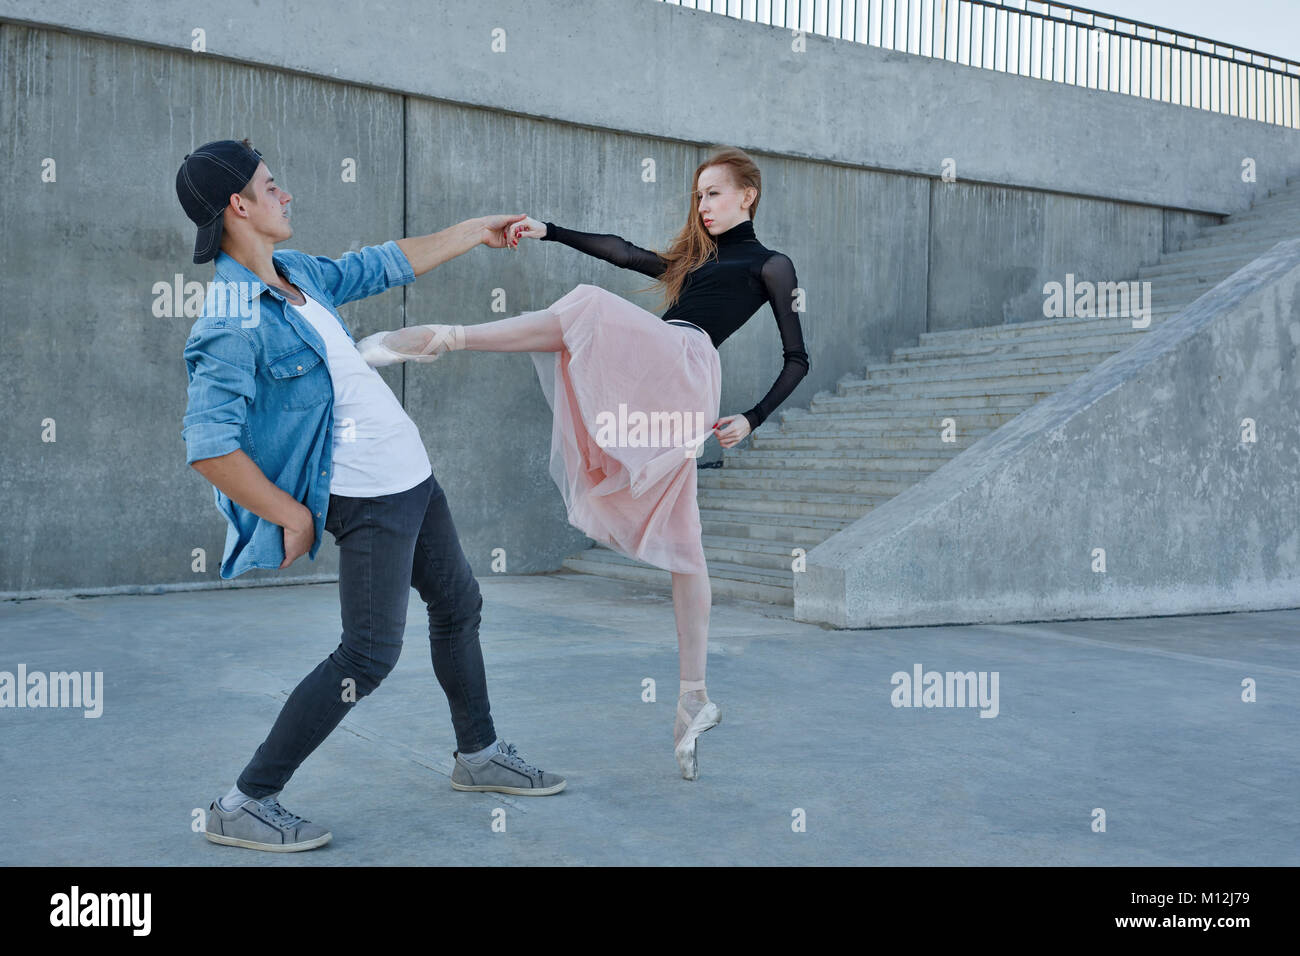 Une ballerine danse avec une danseuse moderne. Date d'amants. Performance dans les rues de la ville. Banque D'Images